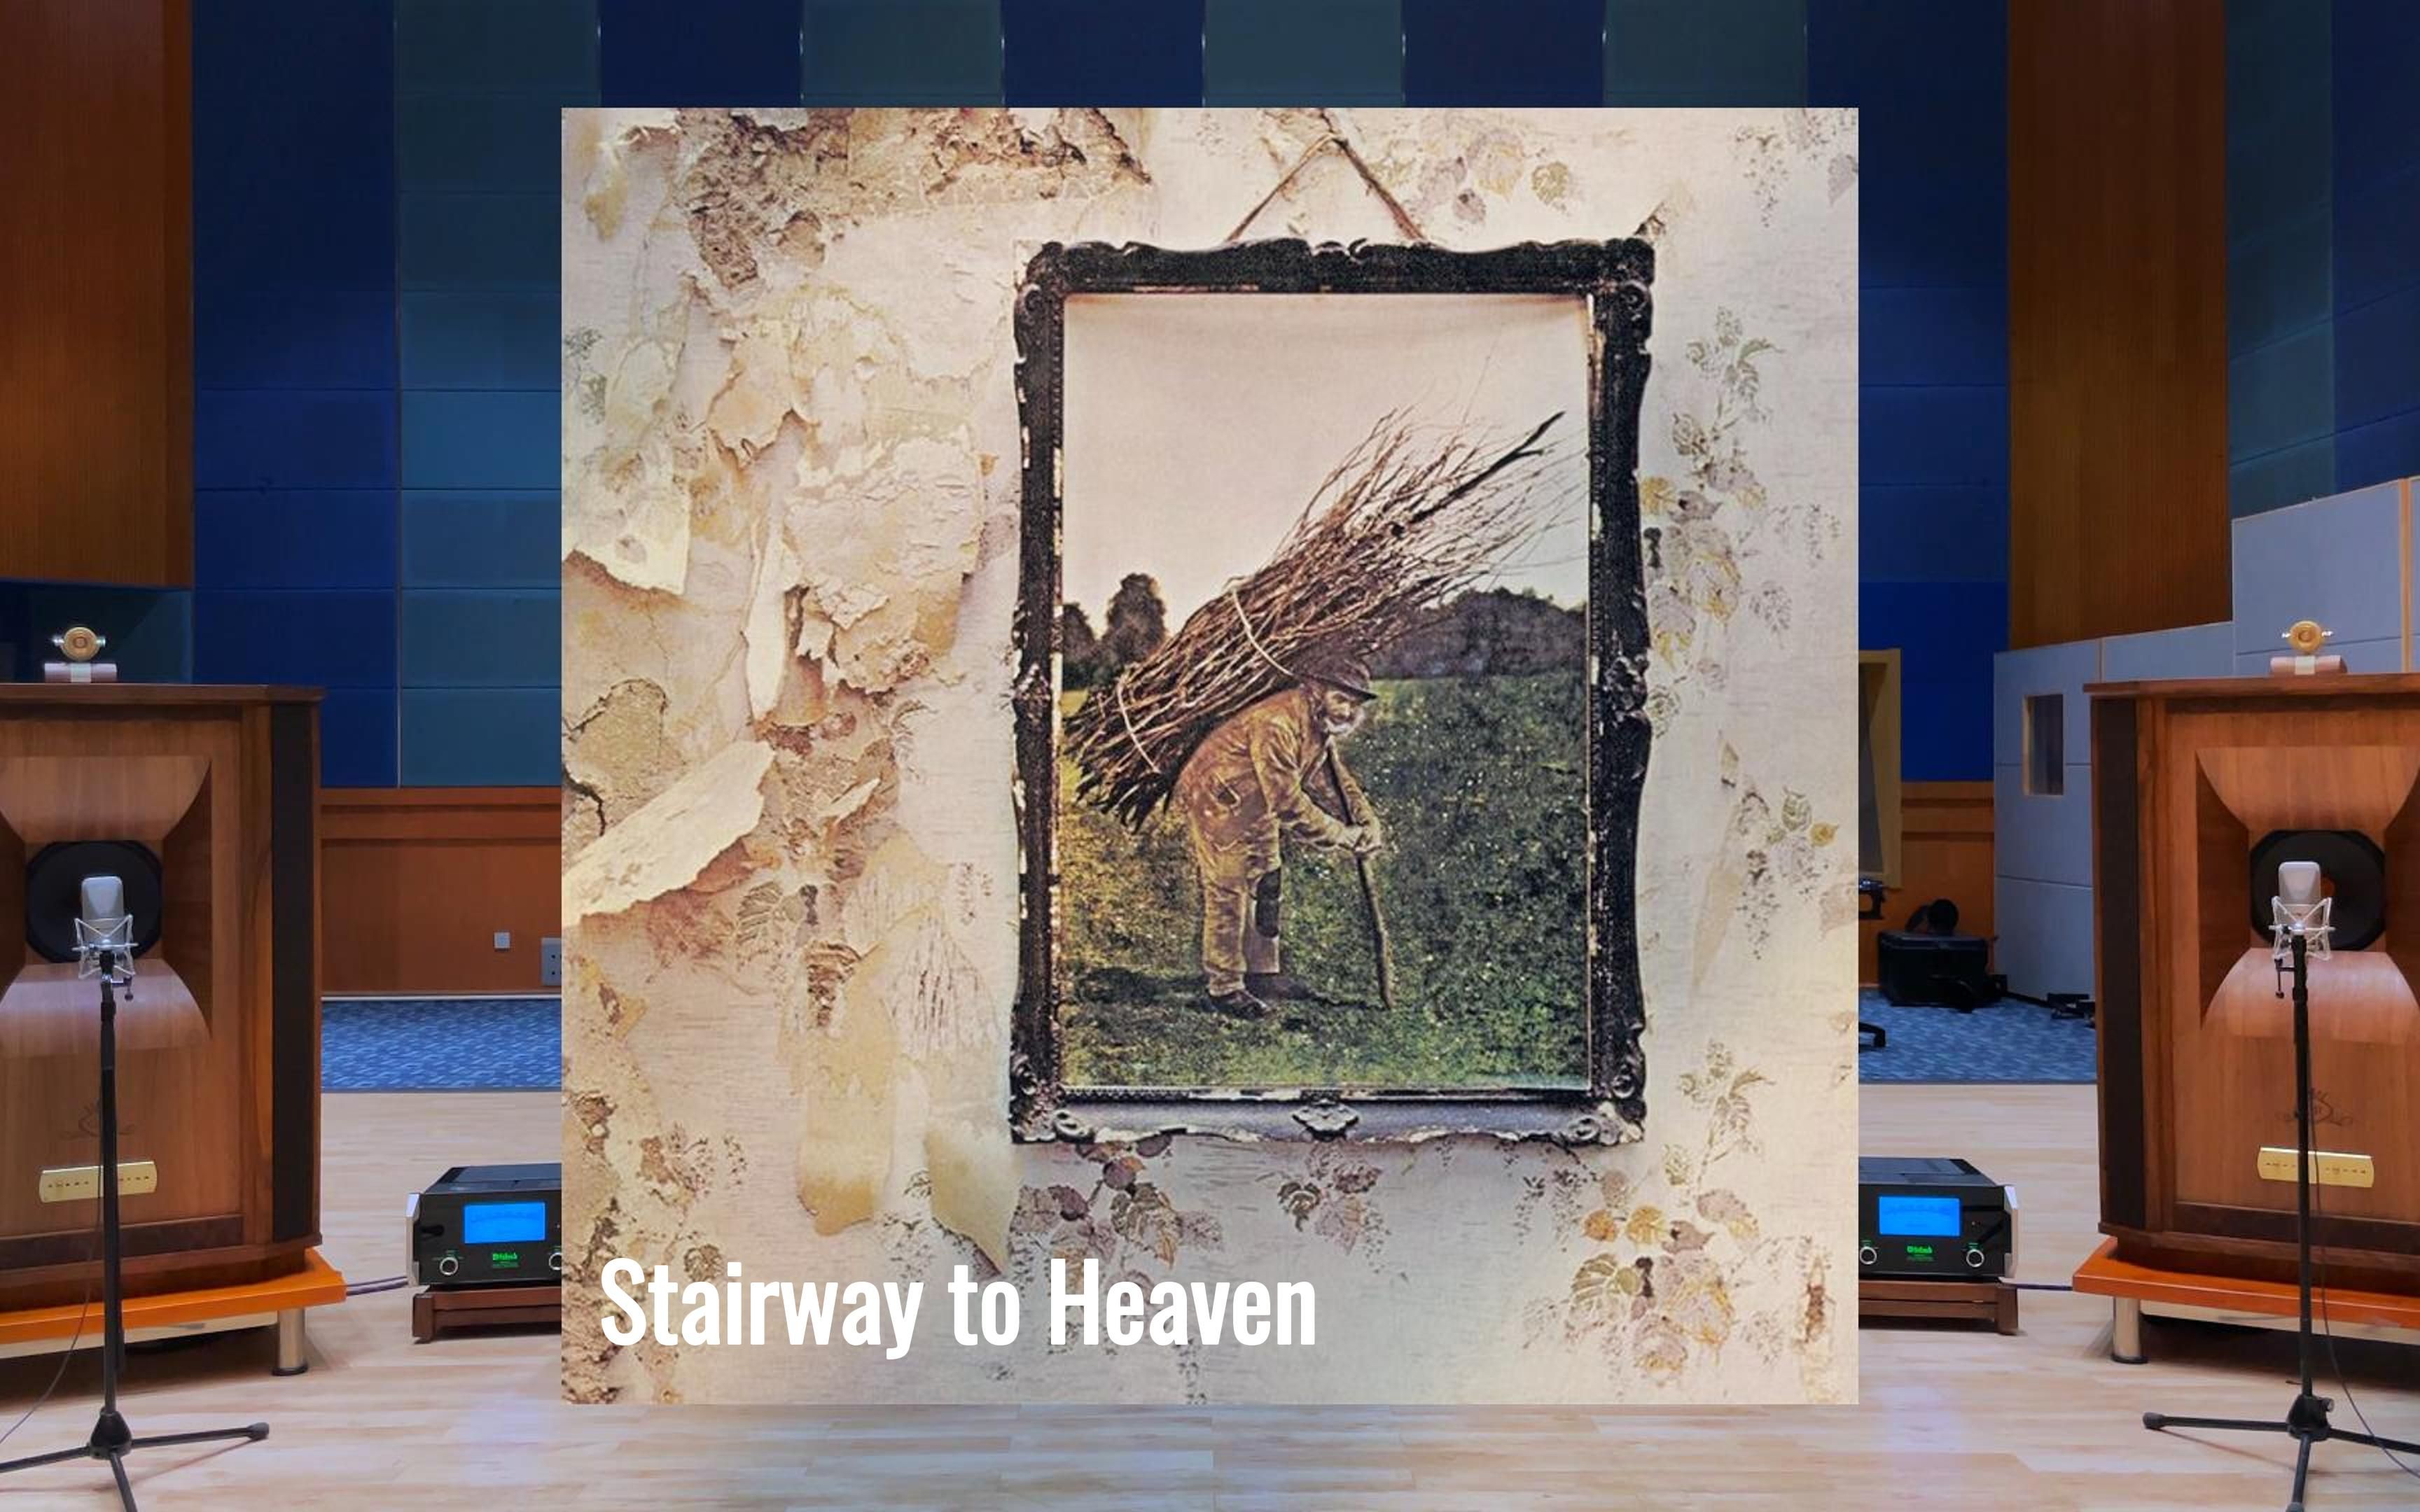 百万级装备试听Stairway to Heaven - Led Zeppelin 齐柏林飞艇【Hi-Res】